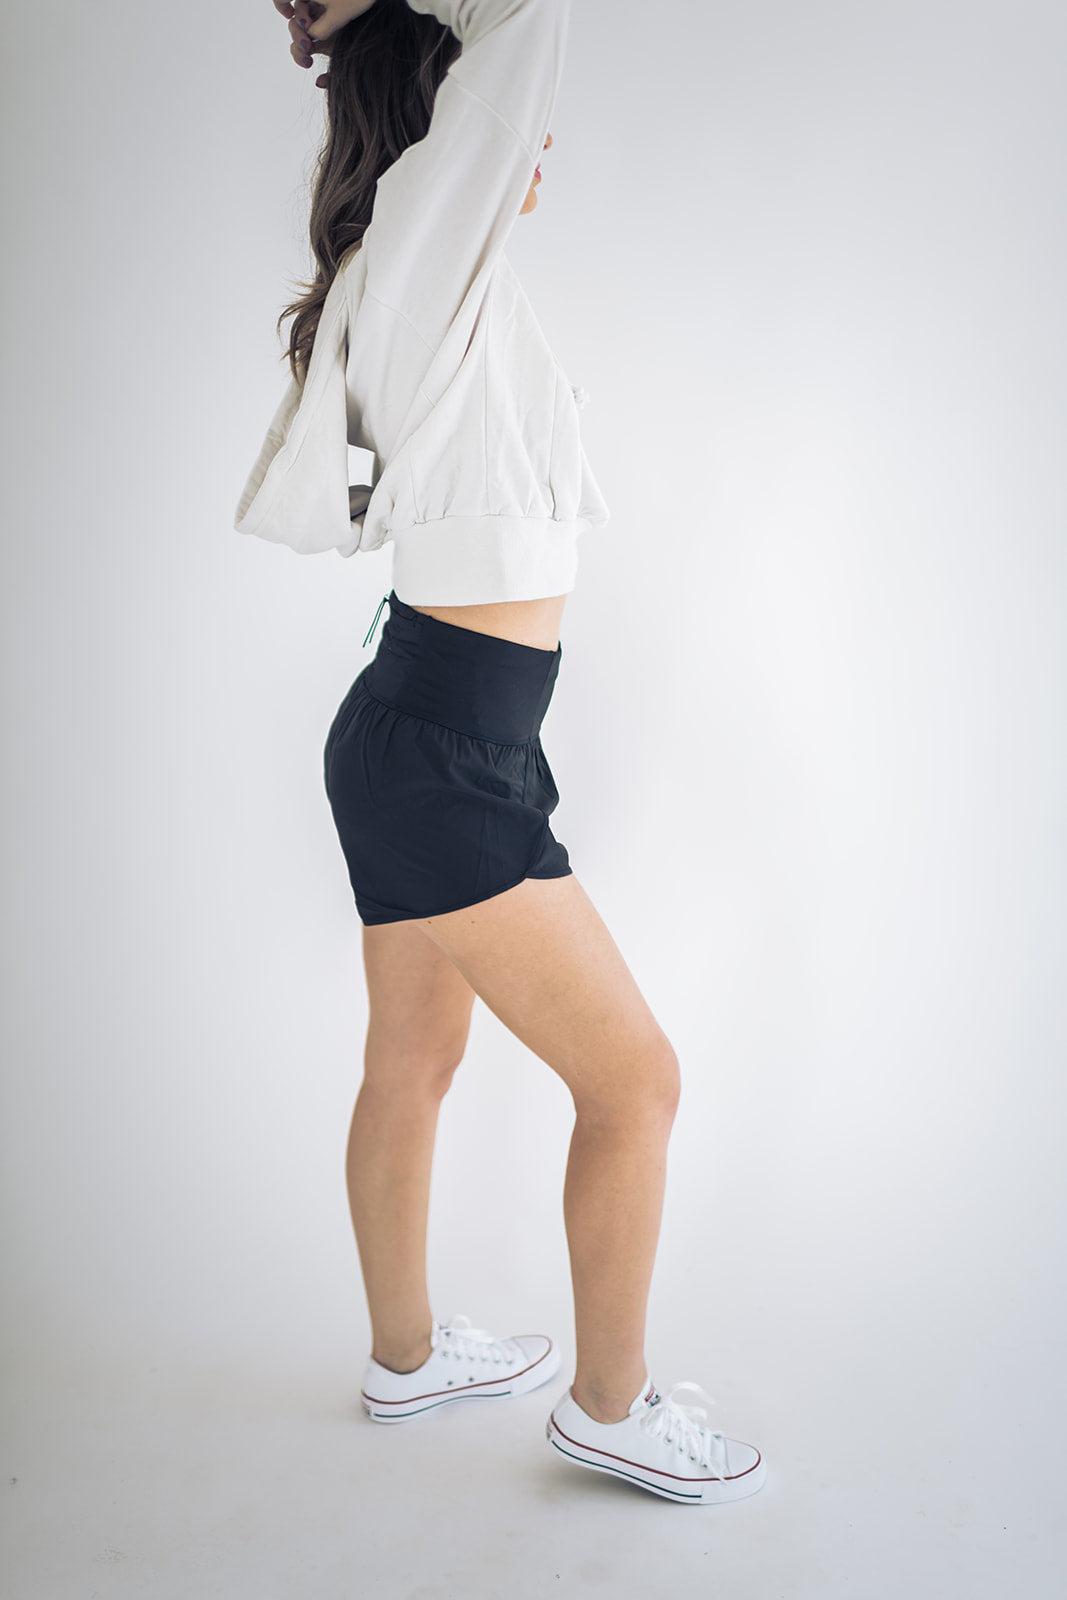 Kiara Shorts in Black